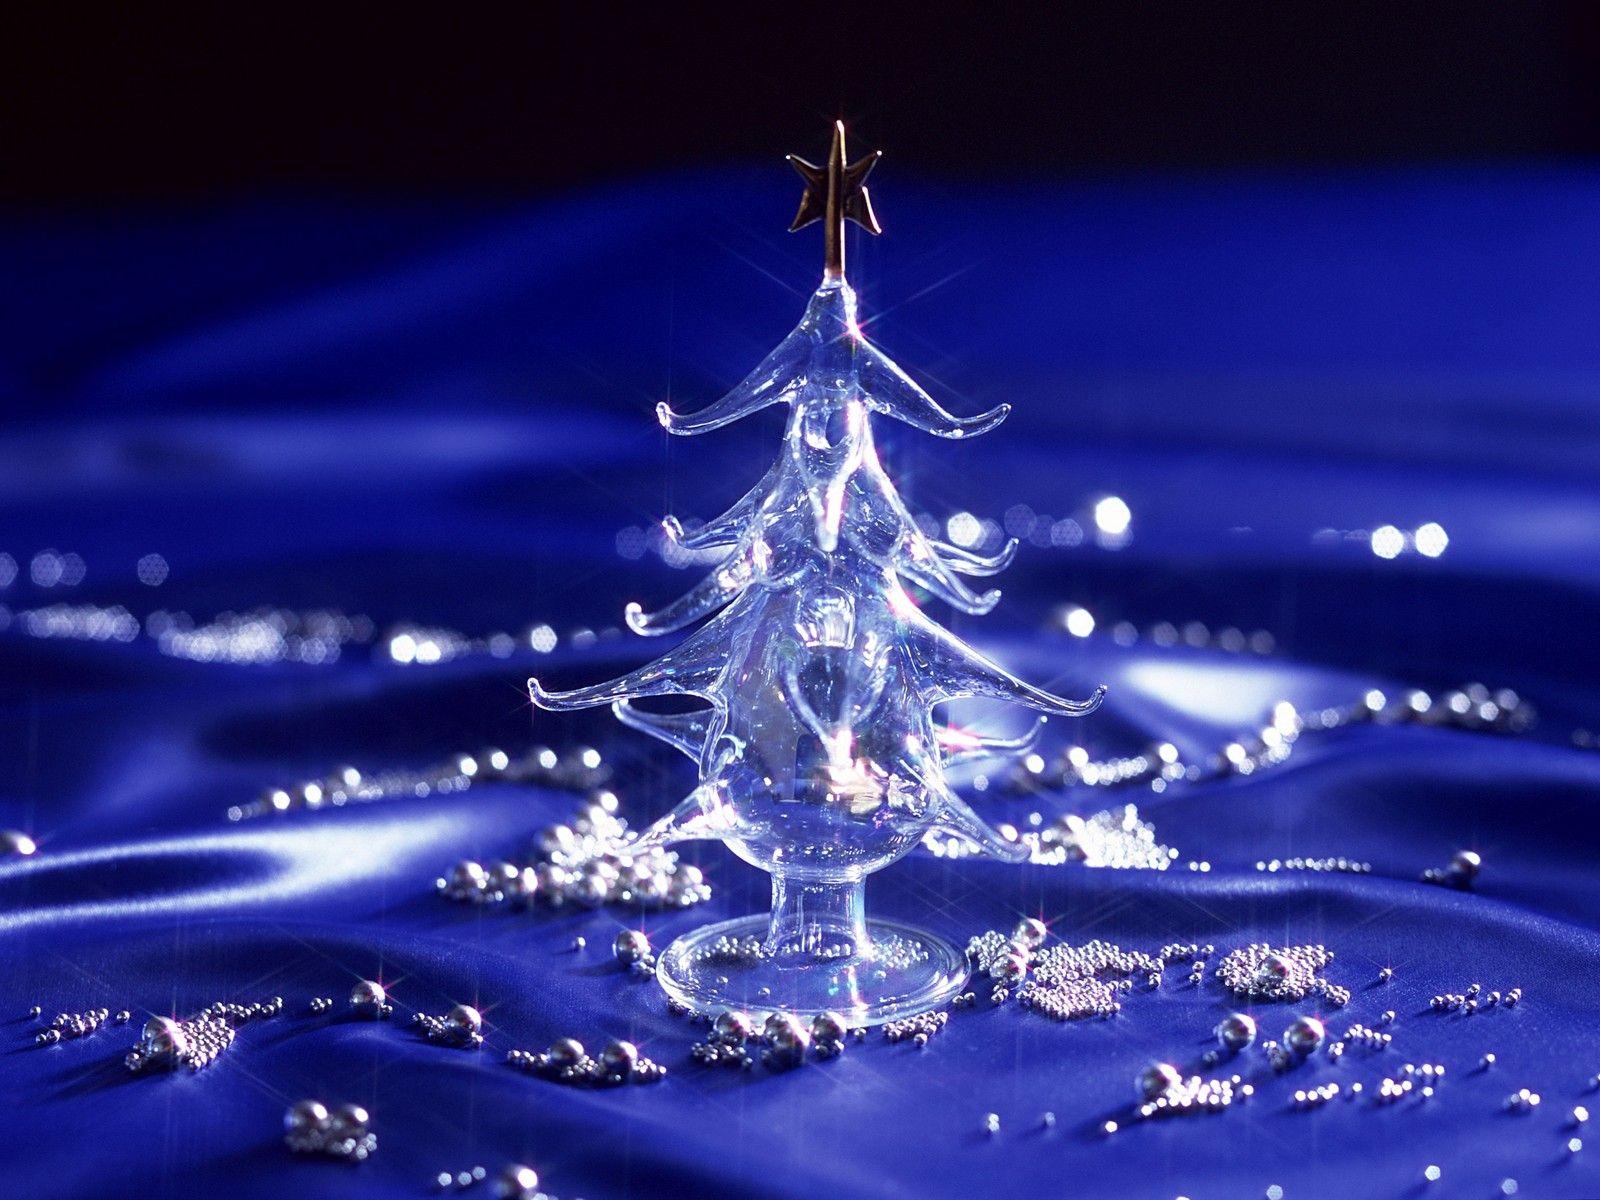 Crystal Christmas Tree. Christmas live wallpaper, Christmas desktop, Christmas desktop wallpaper